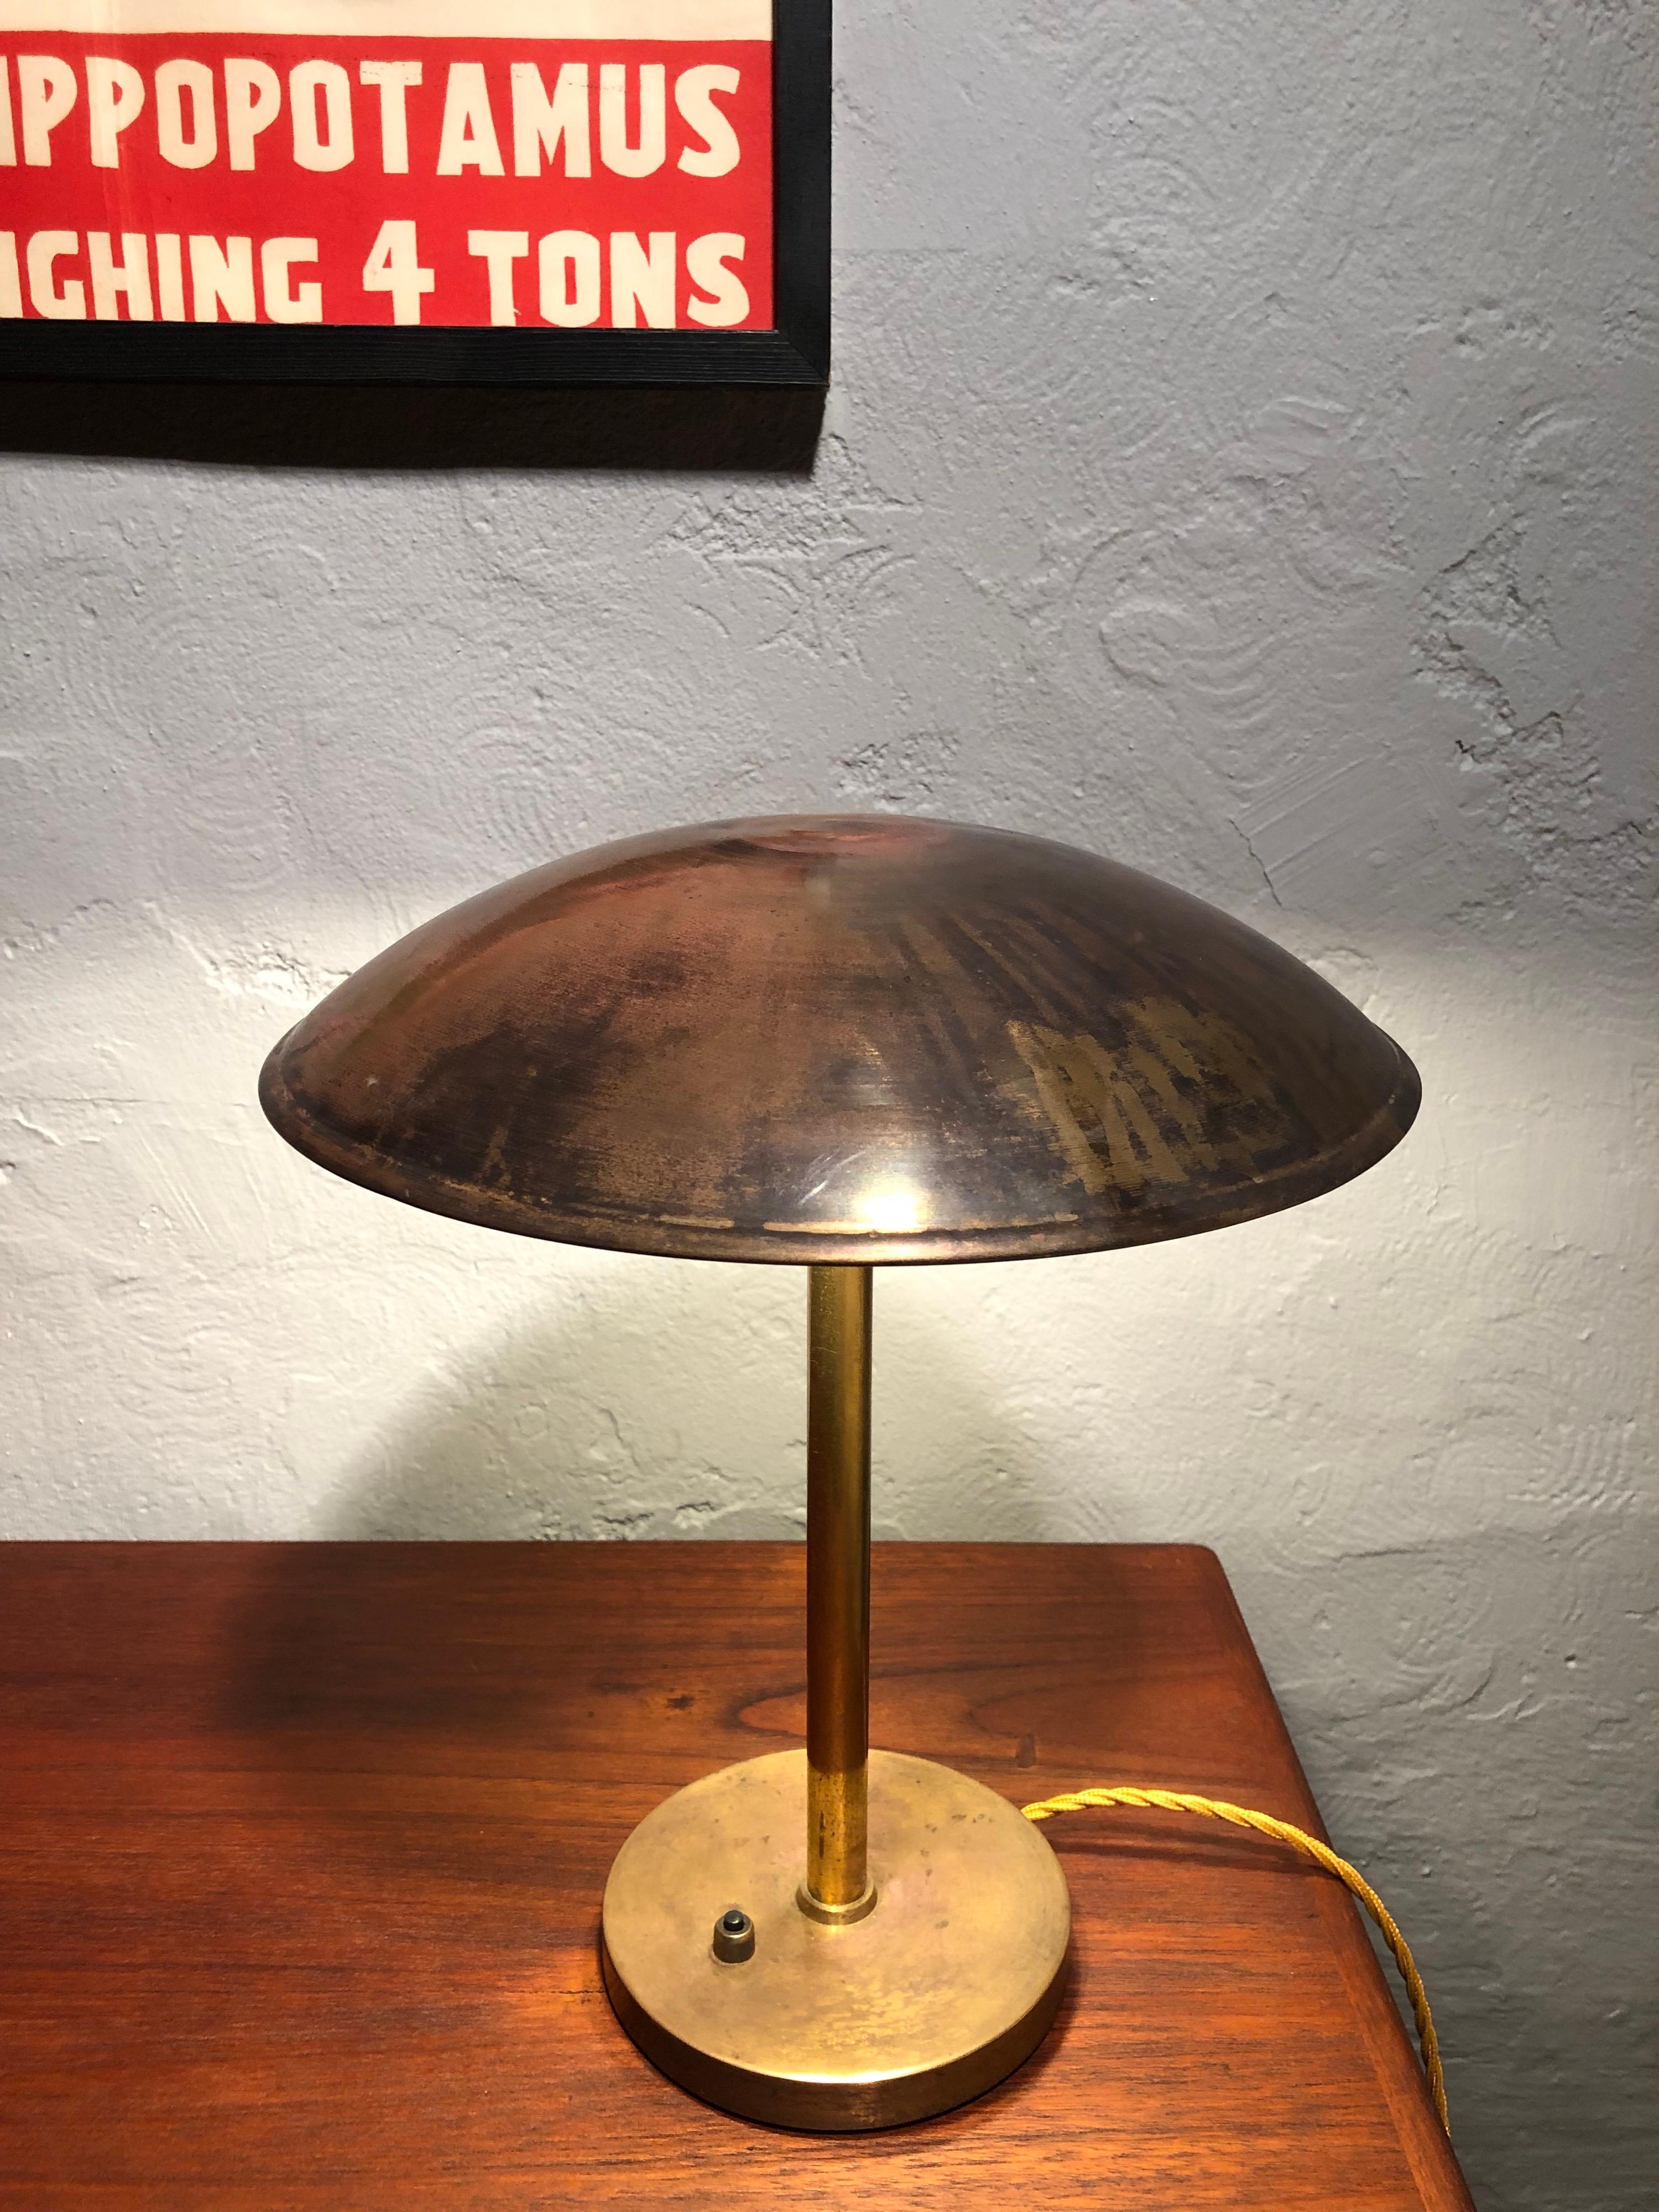 Scandinavian Modern Modernist Fog & Mørup Table Lamp in Brass from the 1930s